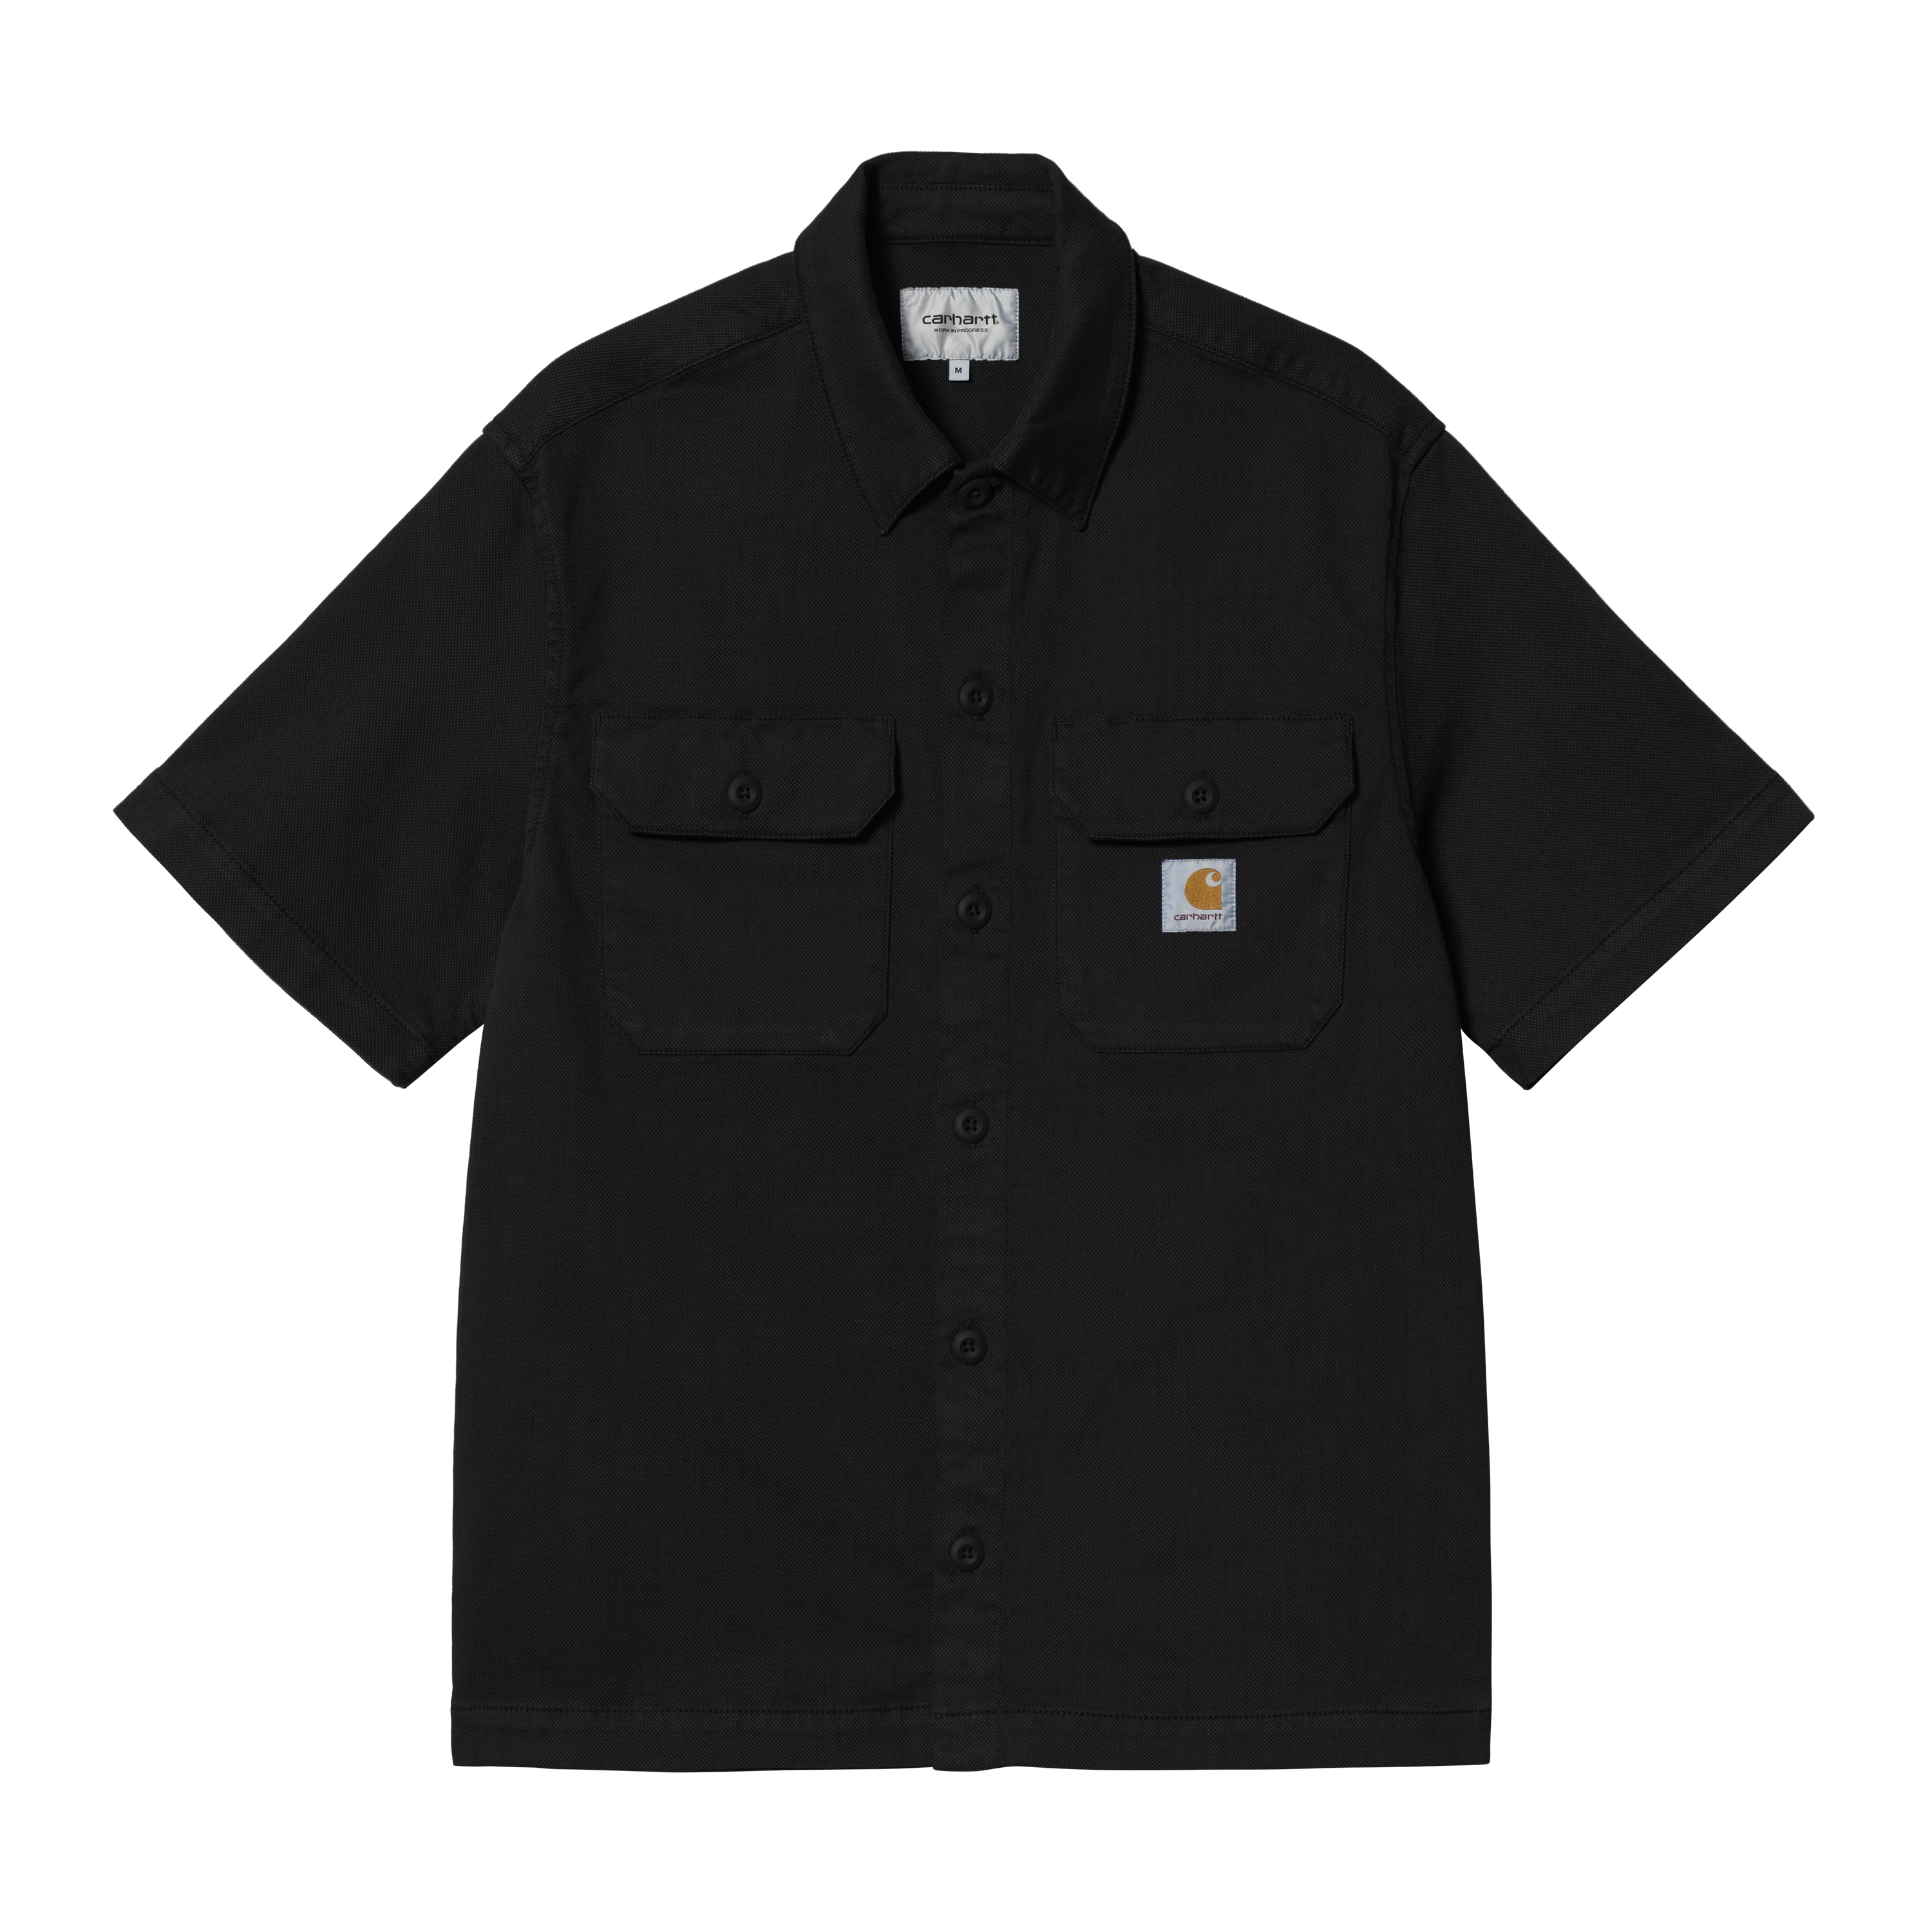 Carhartt WIP Short Sleeve Craft Shirt in Nero